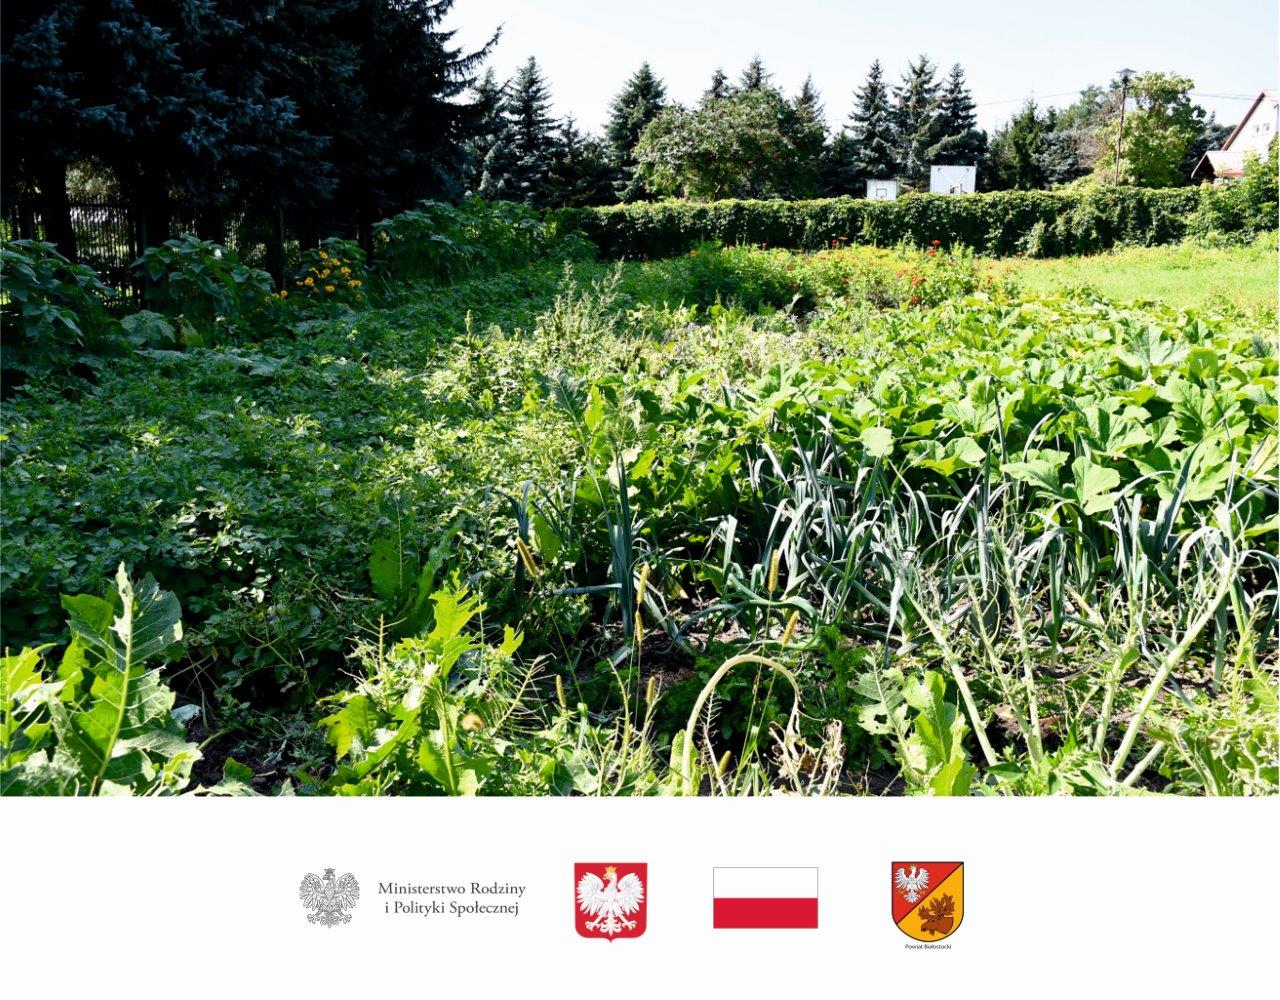 Spotkanie w DPS w Choroszczy w ramach projektu "Od zależności ku samodzielności - Edycja 2021"